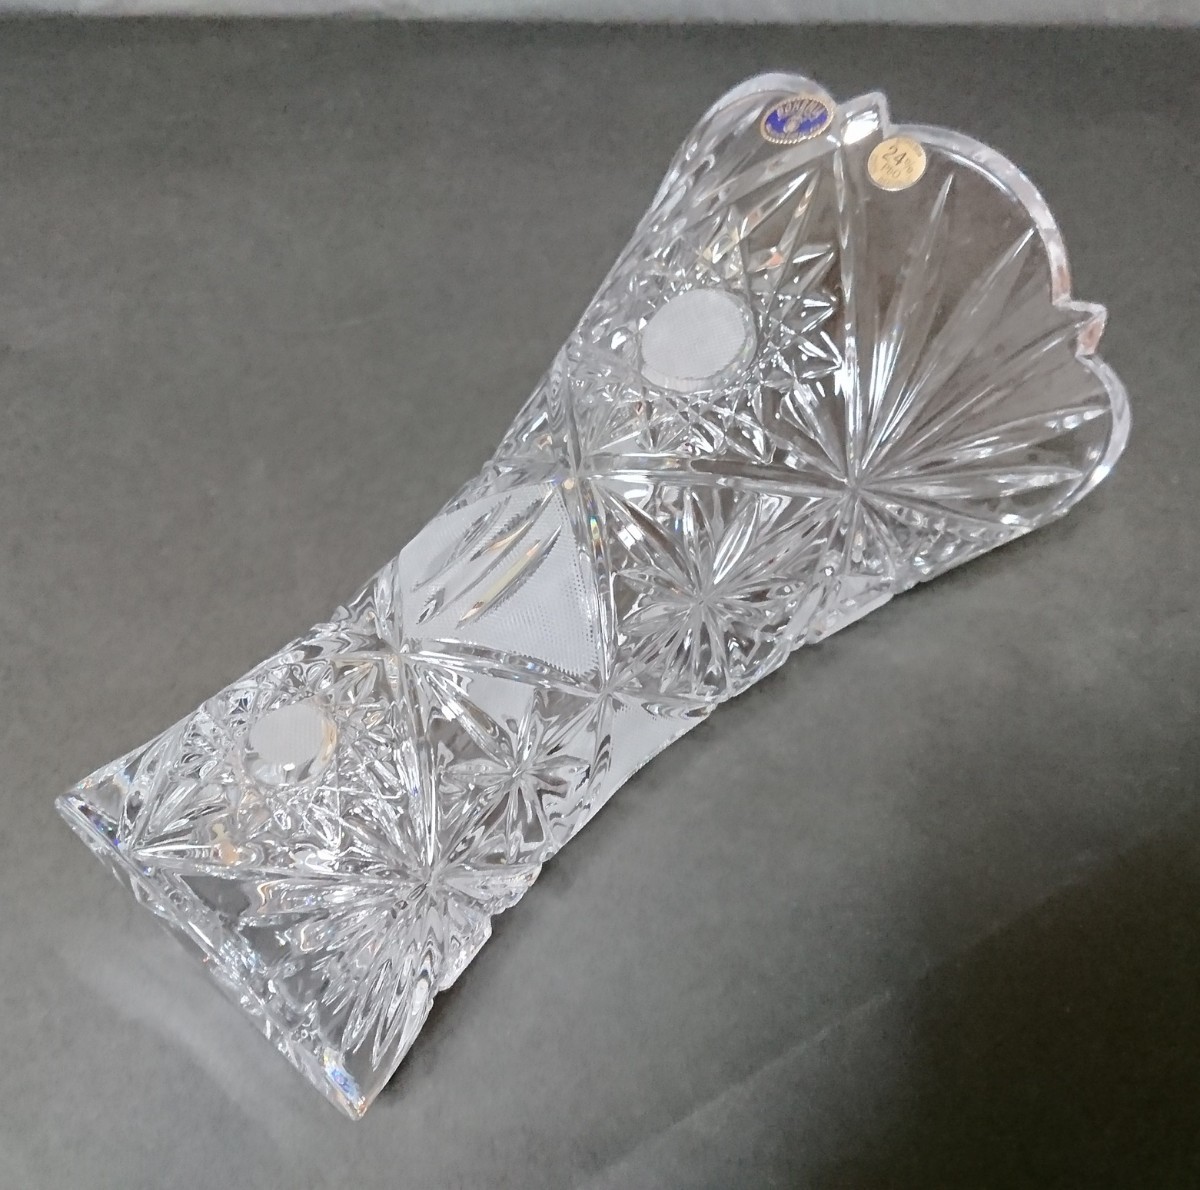 ボヘミアングラス   花瓶   フラワーベース チェコ  クリスタルガラス  LEADCRYSTAL 未使用  ボヘミアクリスタル